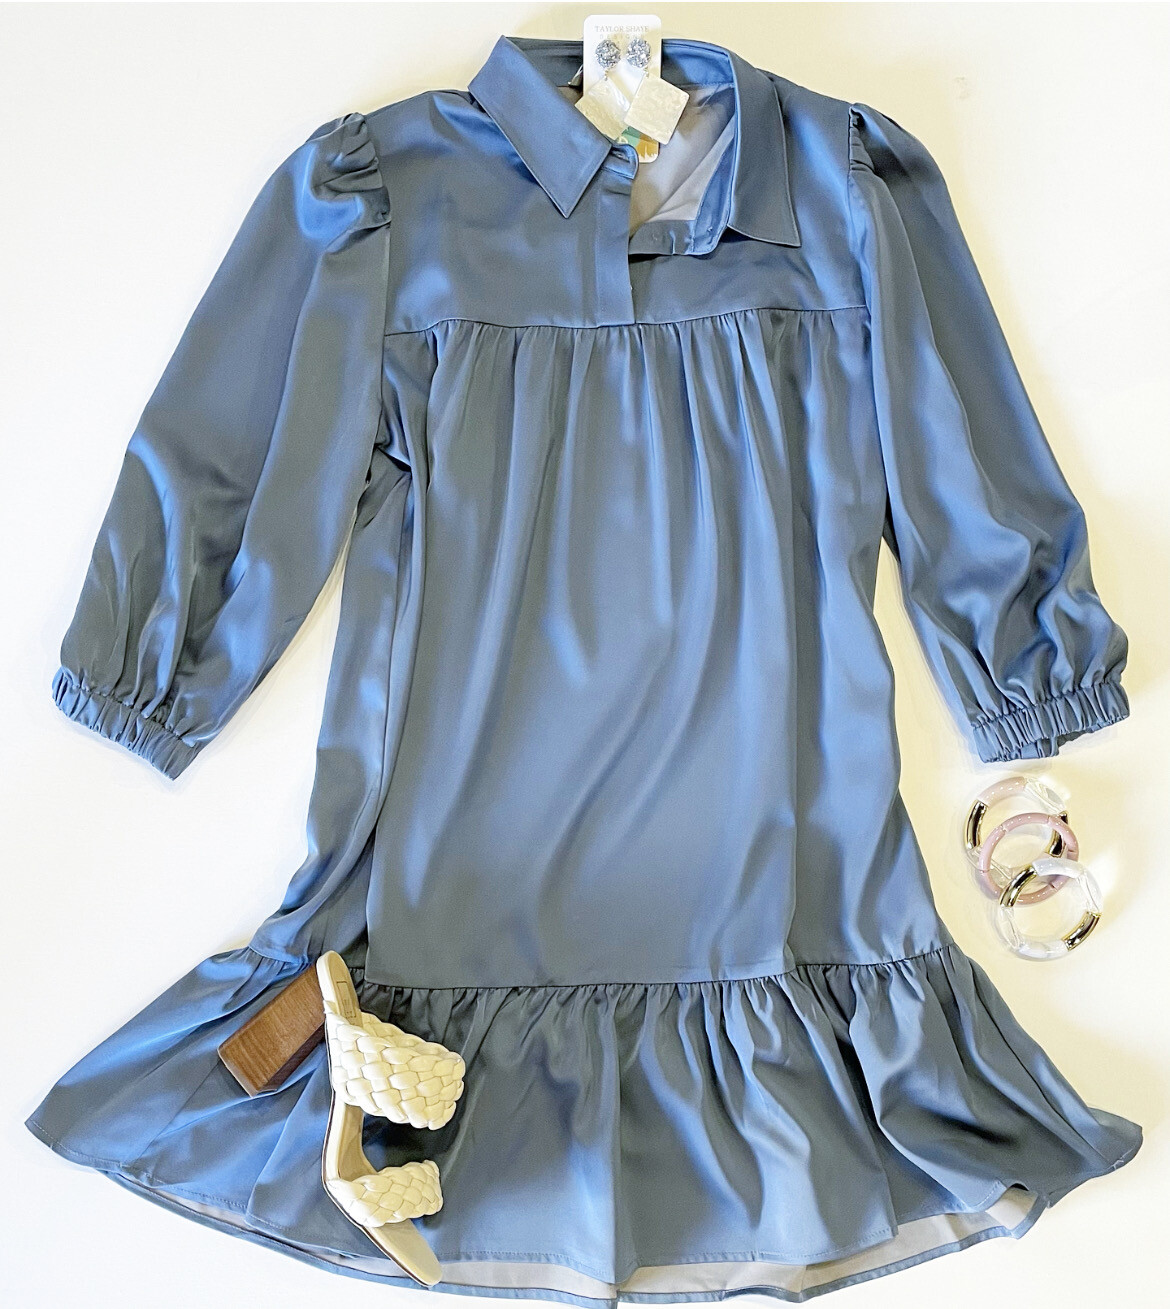 Dusty Blue Mini Dress